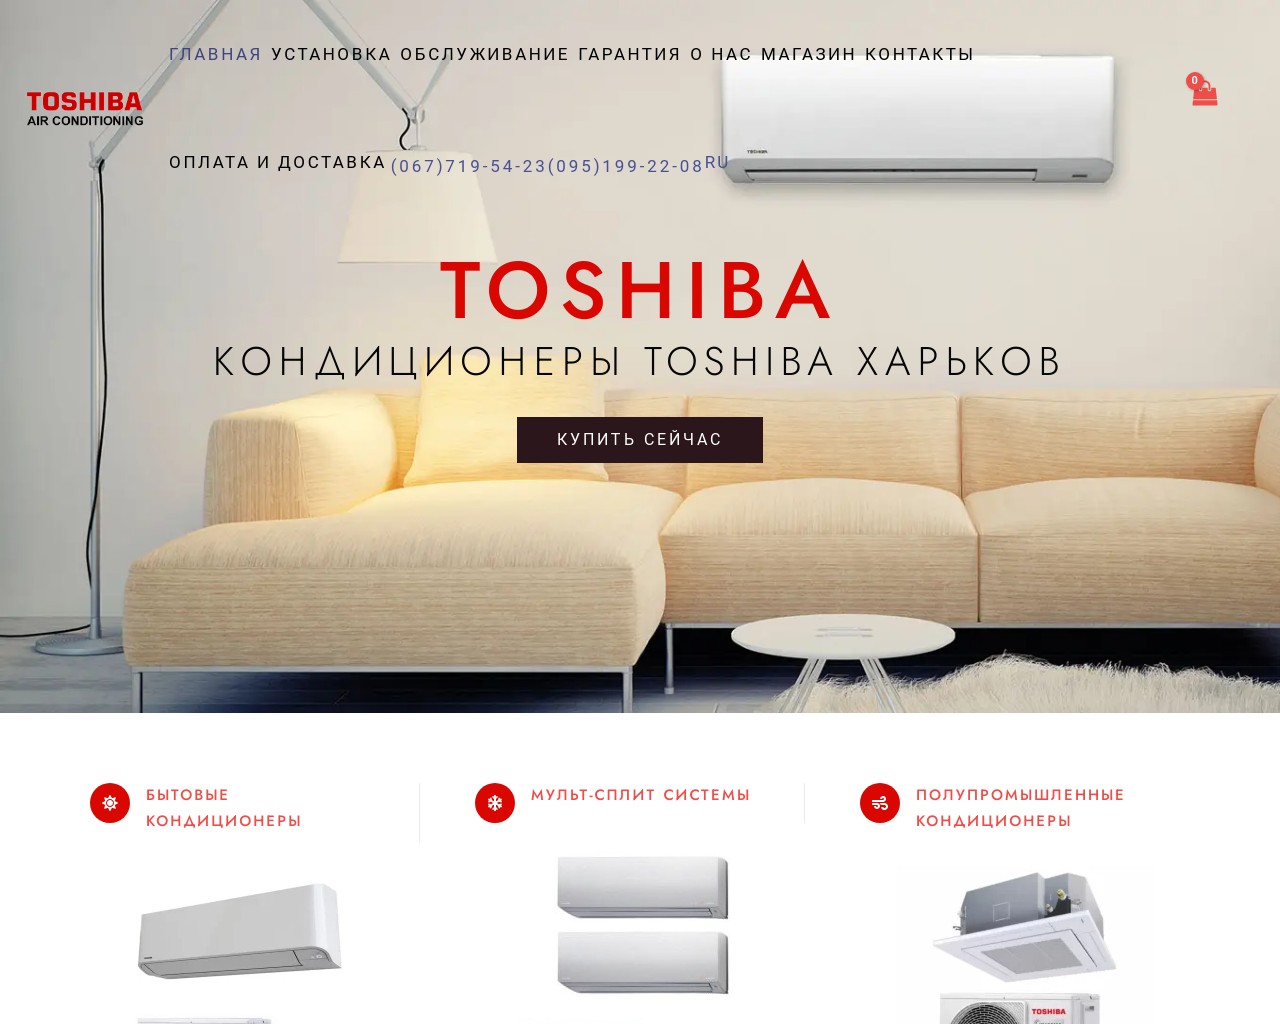 Изображение скриншота сайта - Кондиционеры Toshiba.  Купить Кондиционер Toshiba Харьков